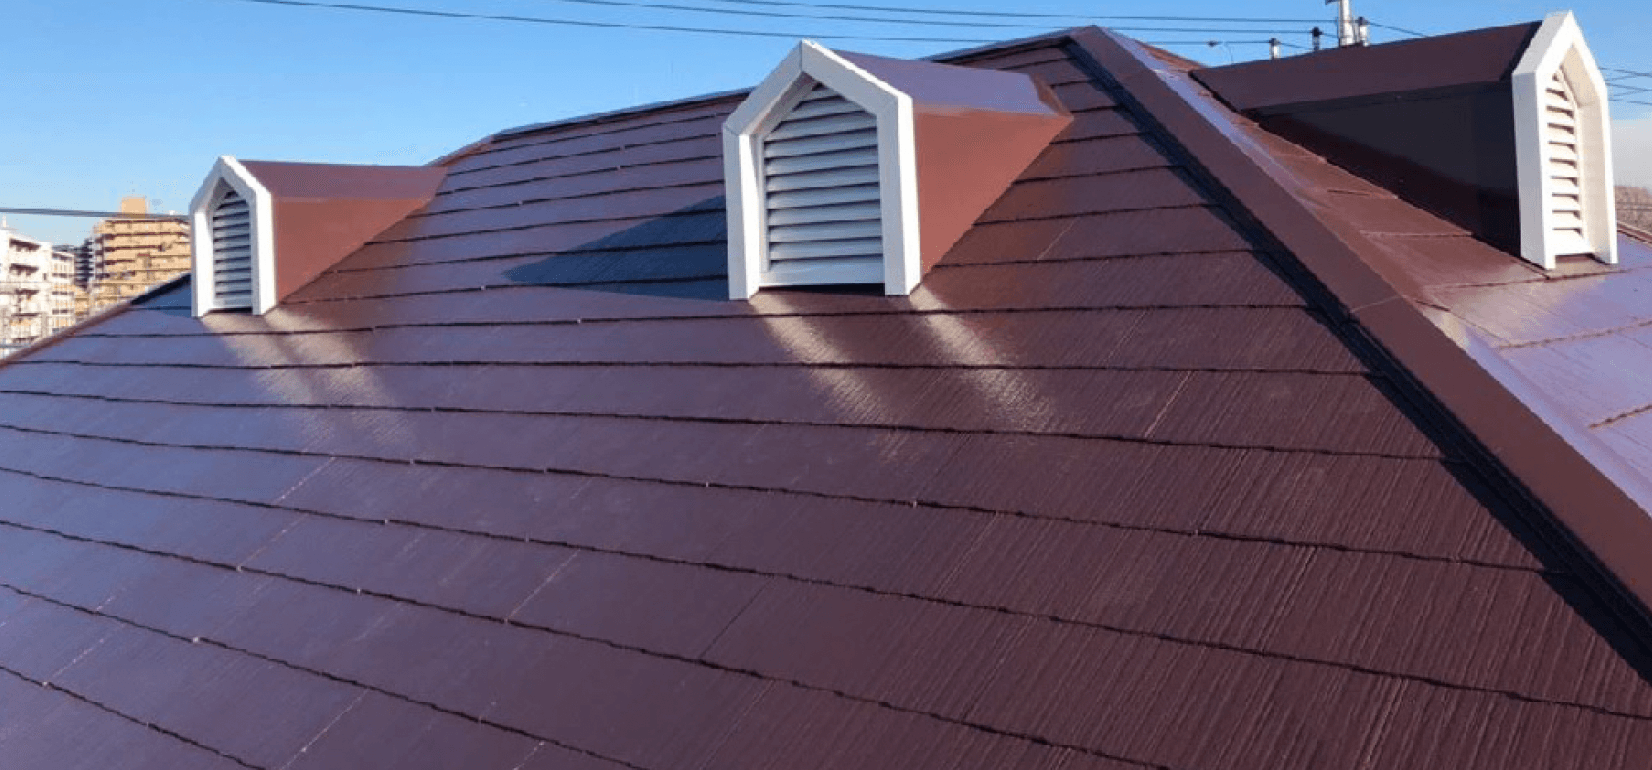 船橋市のスレート屋根の屋根の写真